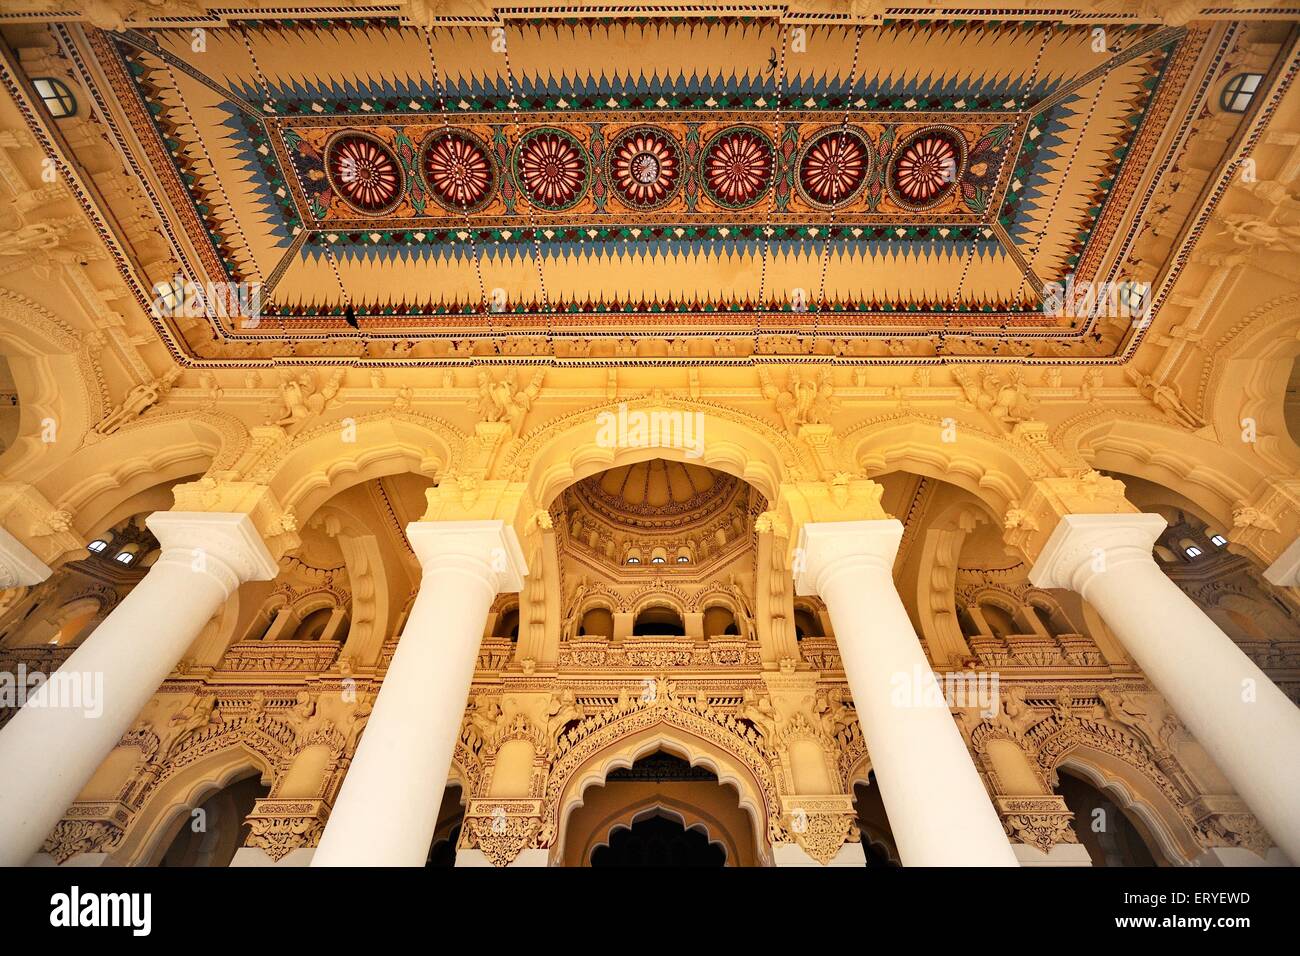 Pilier et plafond dans le palais de thirumalai nayak Madurai Tamil Nadu Inde Banque D'Images